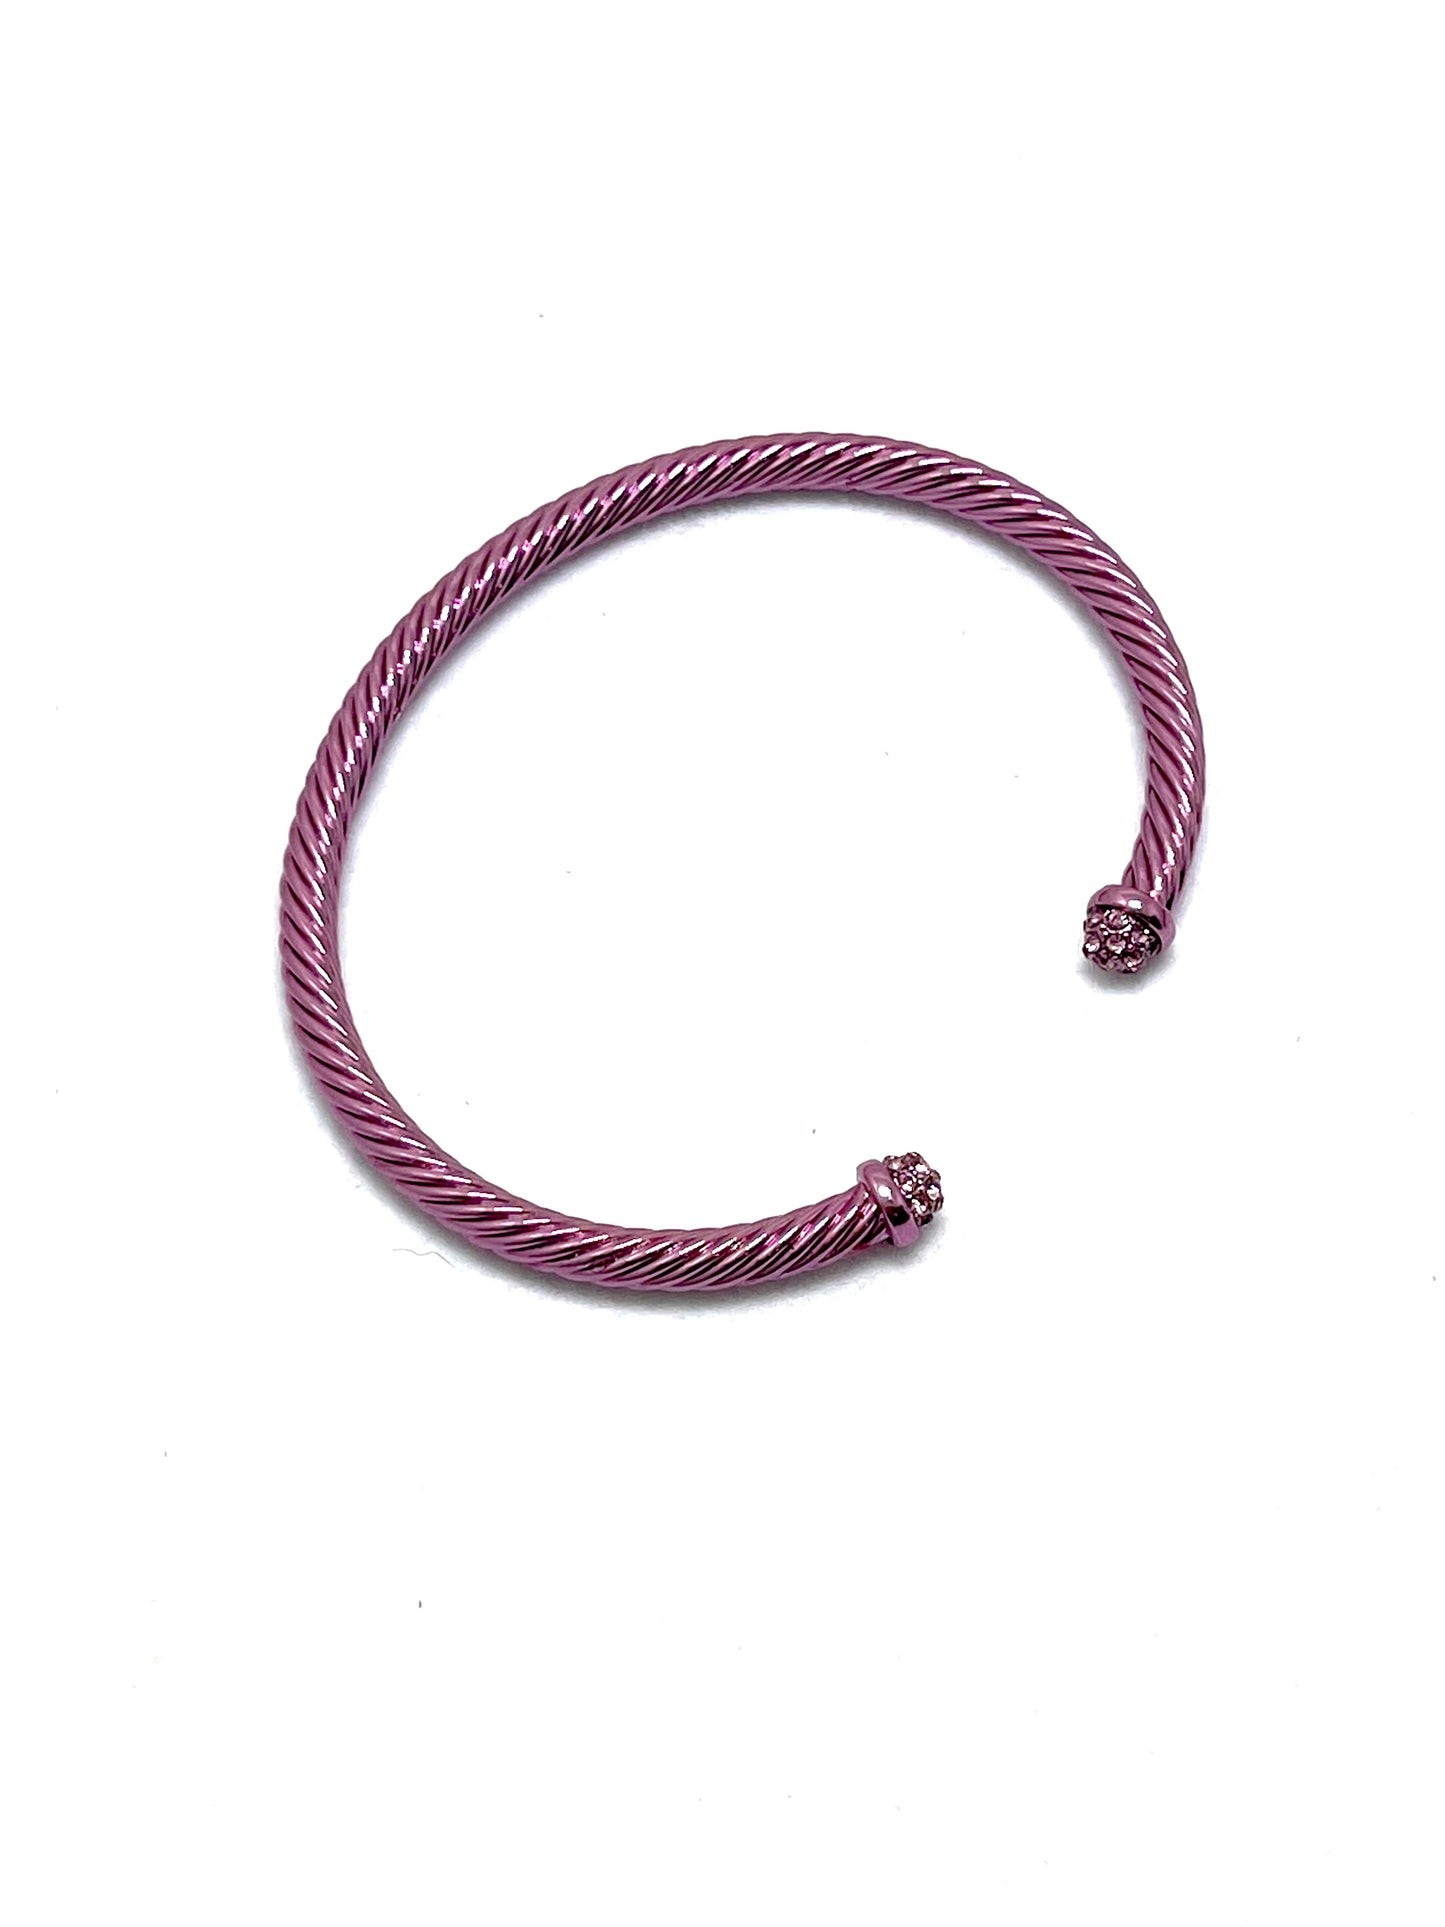 Renaissance Metallic Cable Bracelet